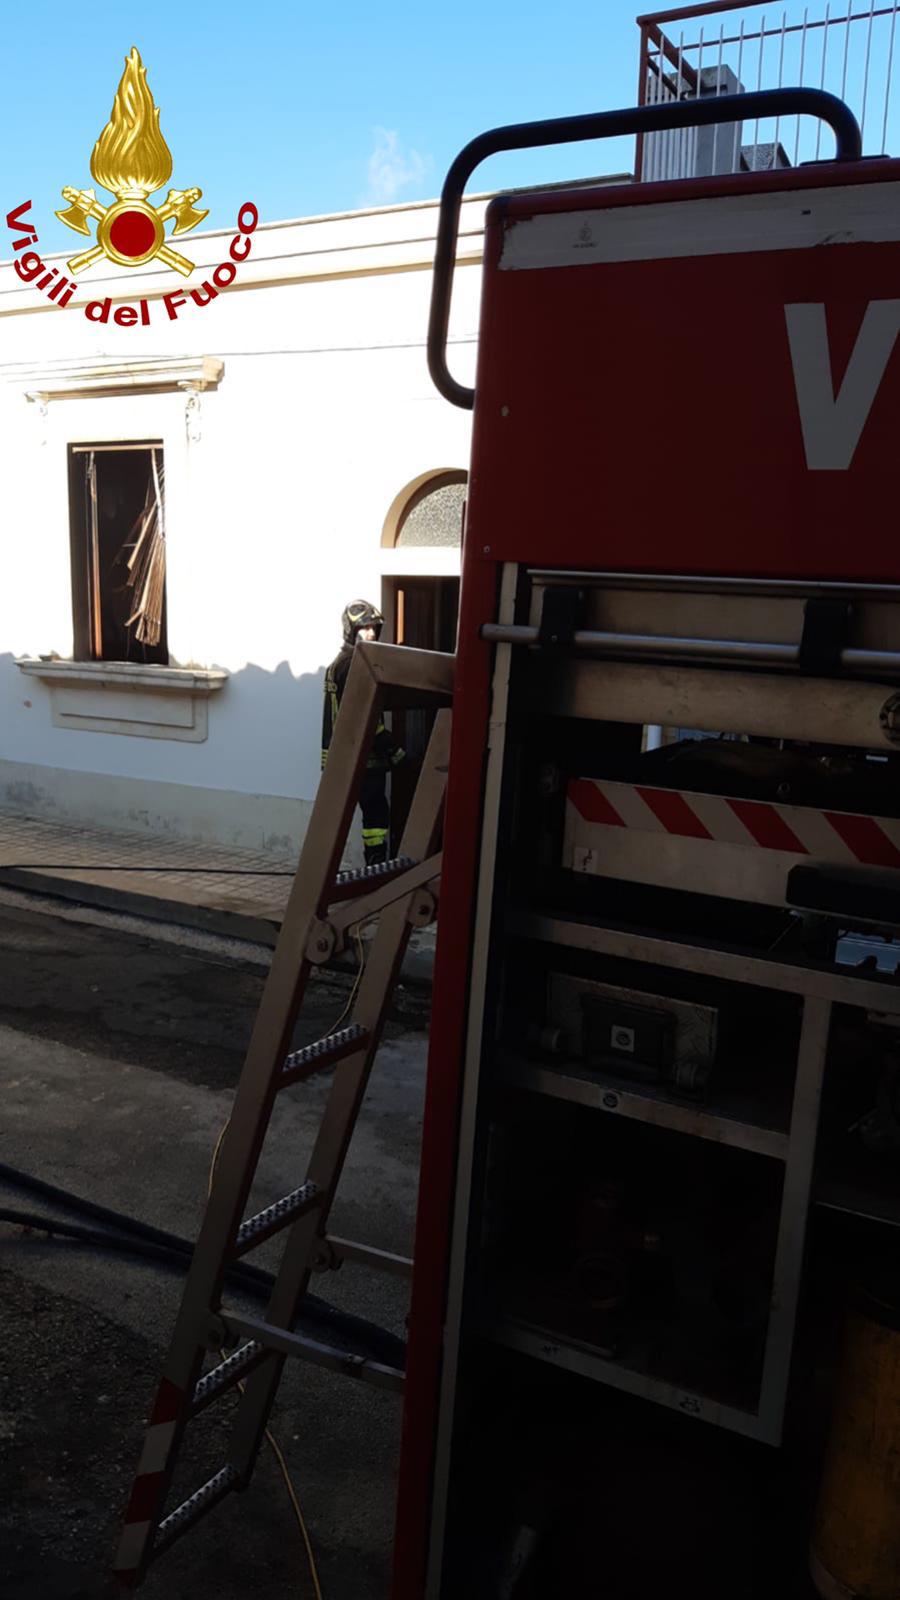 Scoppia incendio in casa, donna  trovata morta a Canicattini Bagni